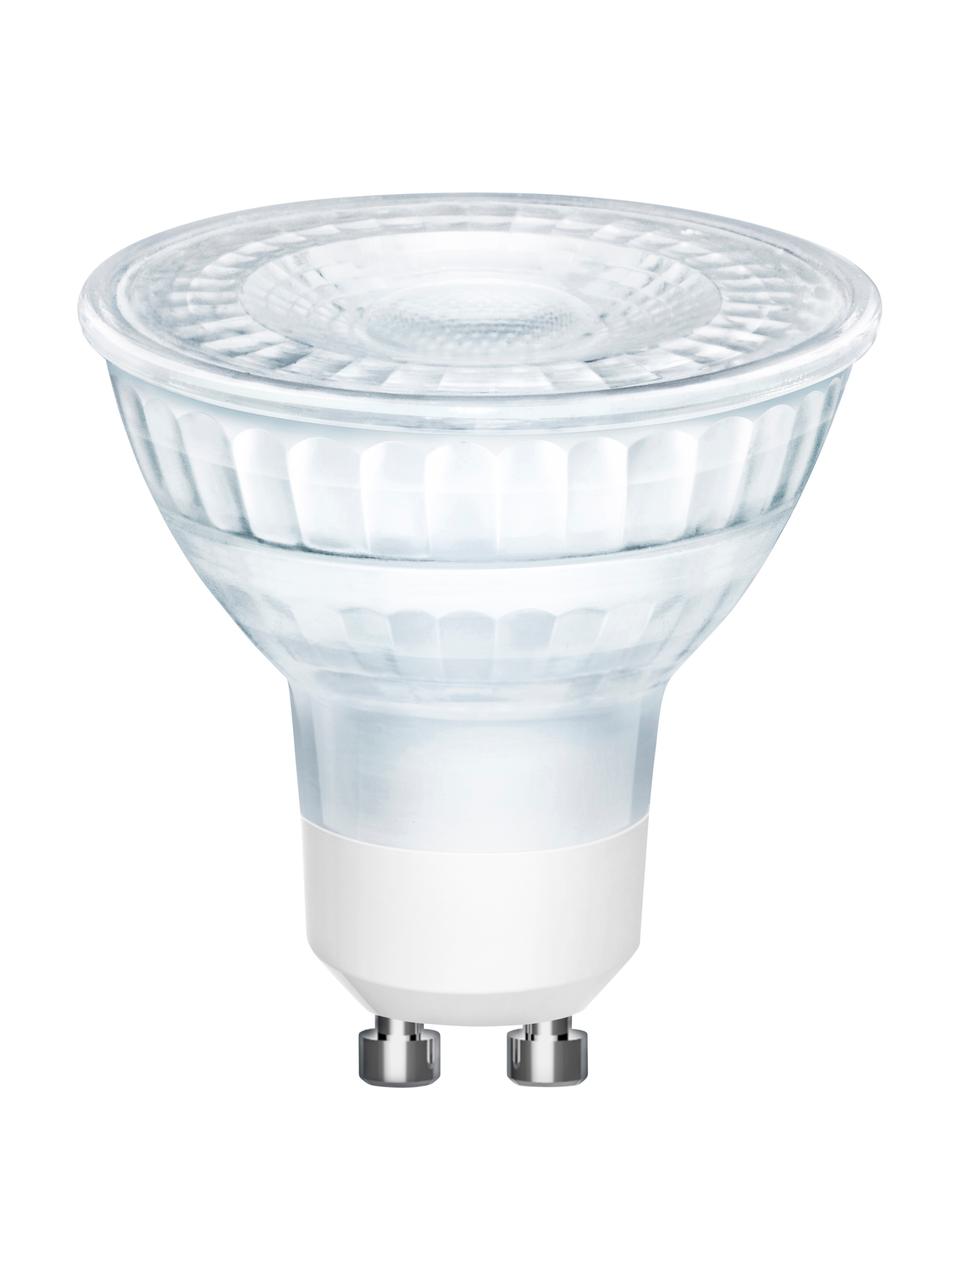 GU10 Leuchtmittel, 345lm, dimmbar, warmweiß, 3 Stück, Leuchtmittelschirm: Glas, Leuchtmittelfassung: Aluminium, Transparent, Ø 5 x H 6 cm